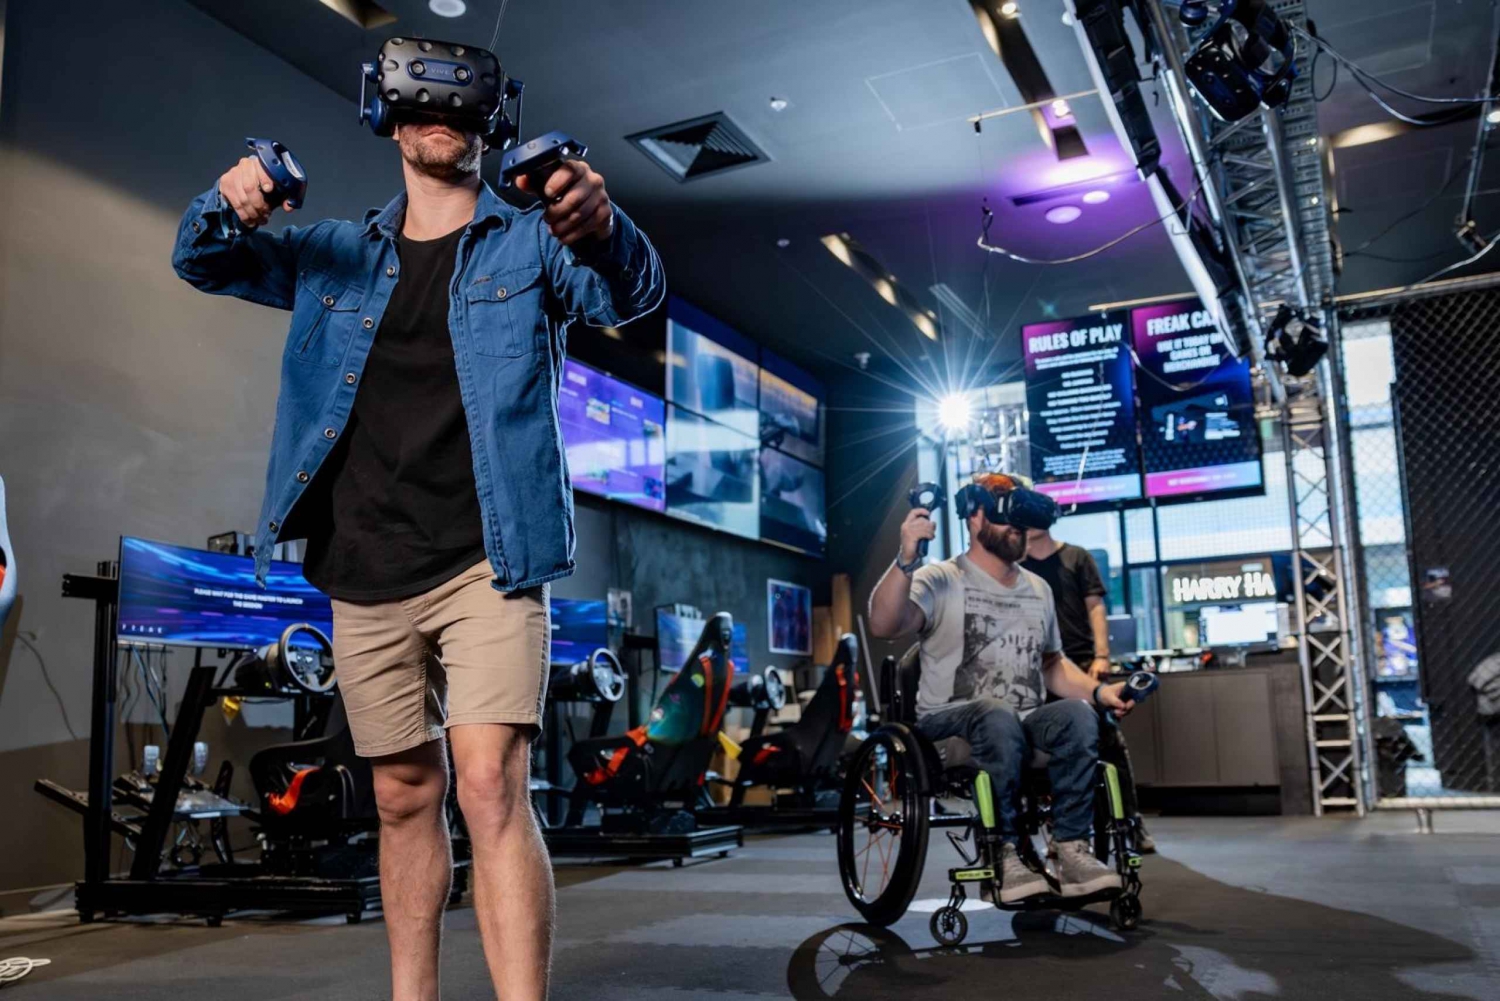 Bondi Junction: Esperienza di Escape Room VR per 2 persone